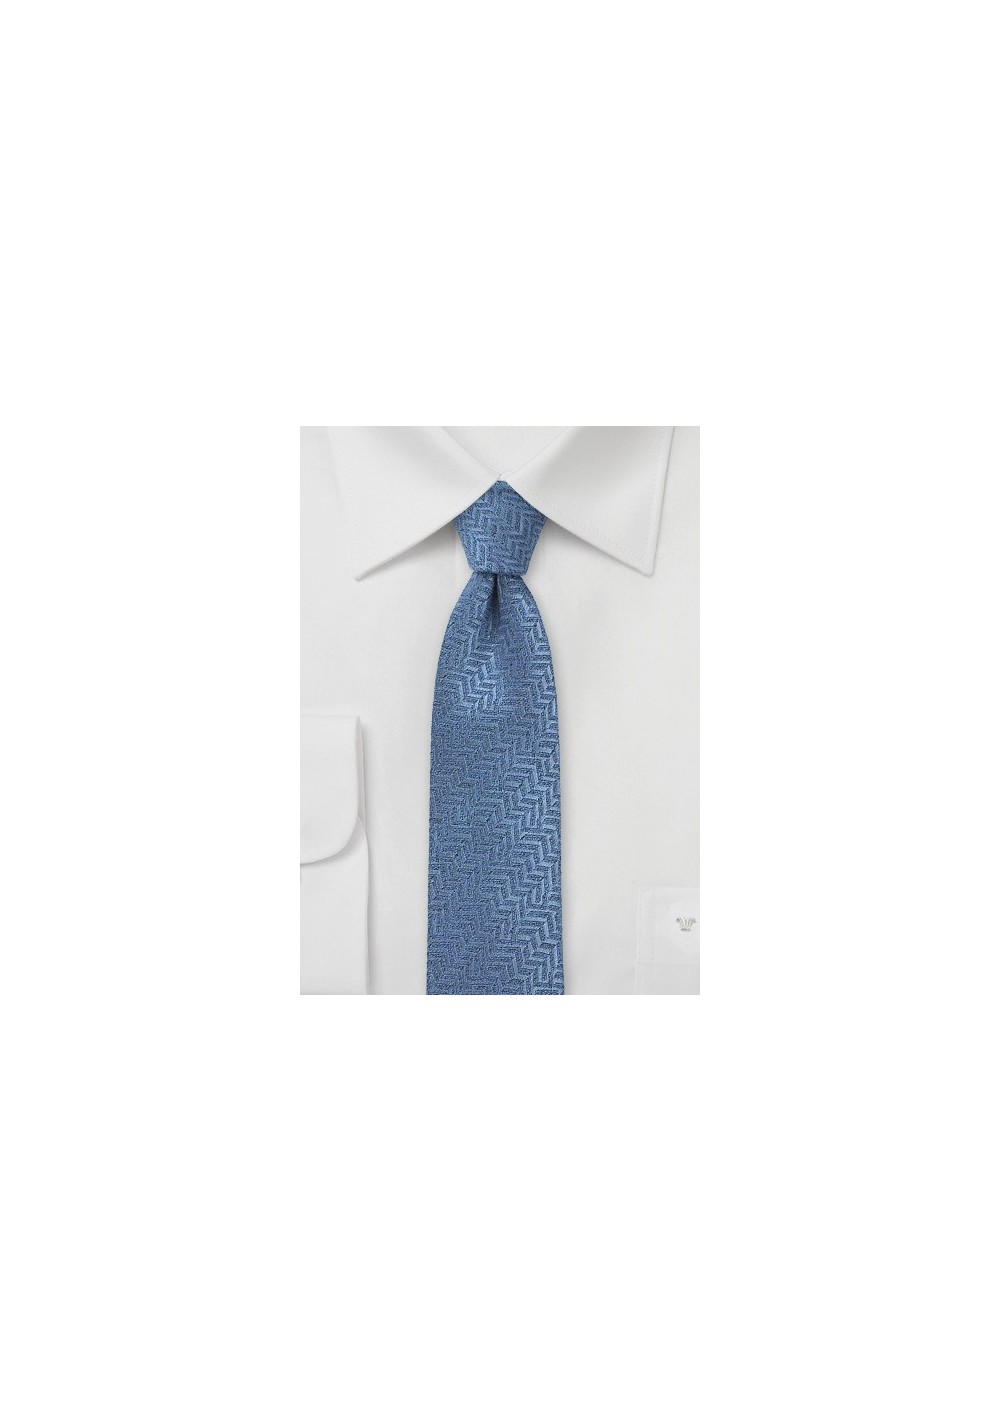 Steel Blue Herringbone Patterned Skinny Tie